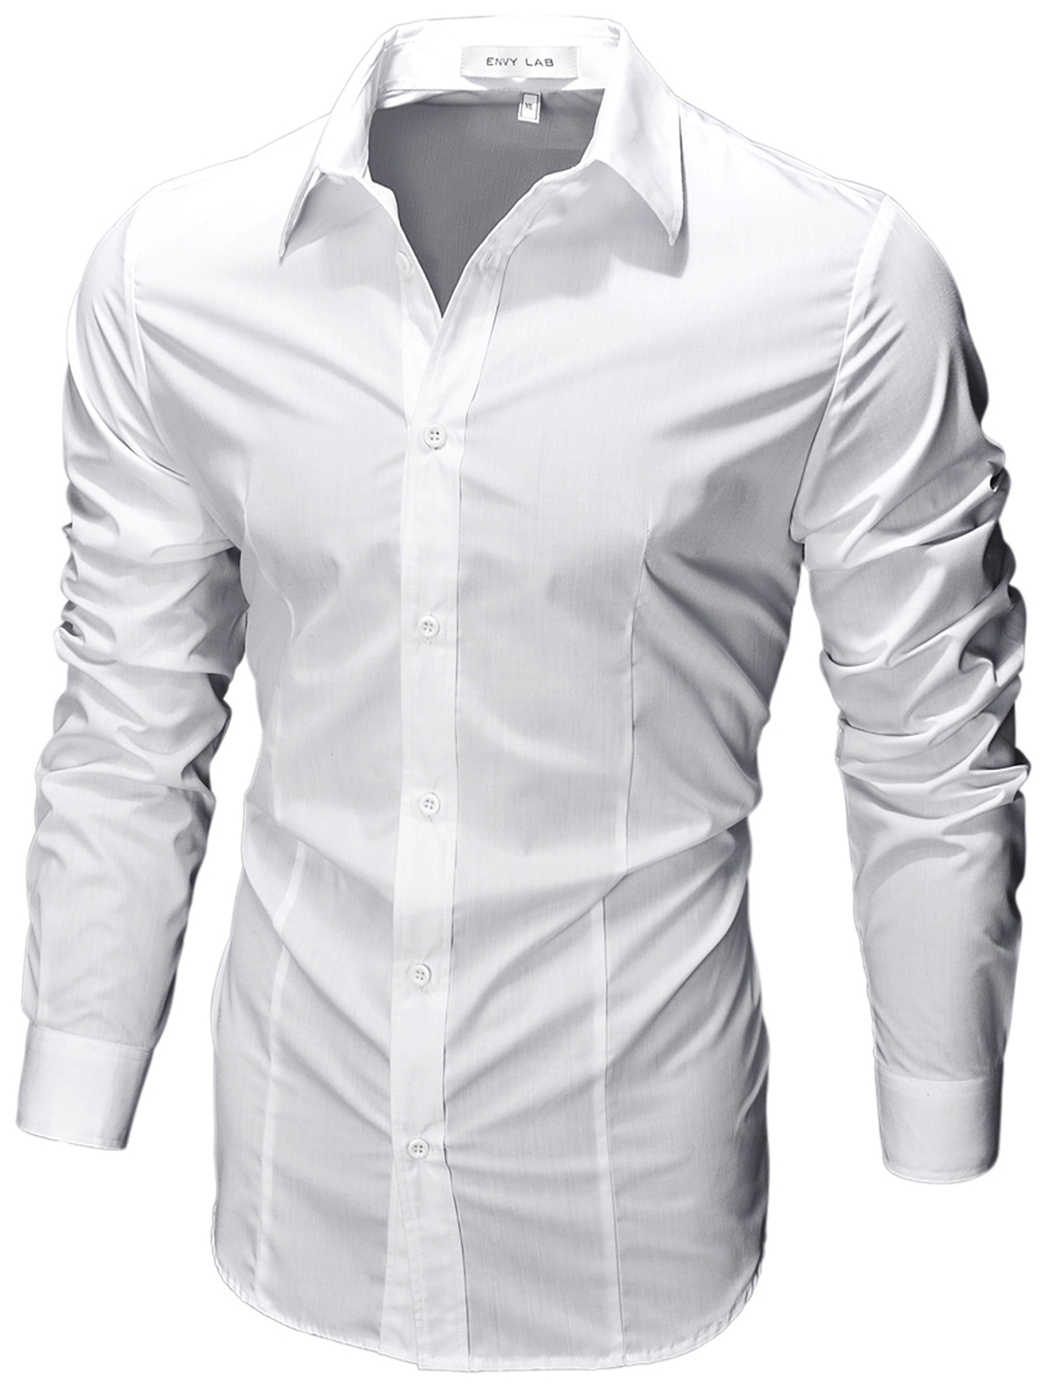 Купить рубашку мужскую с длинным рукавом классическую. Рубашка Envy Lab мужская. Мужская белая сорочка Envy Lab. Smog Slim Fit рубашка белая. Smog рубашка мужская Slim Fit.